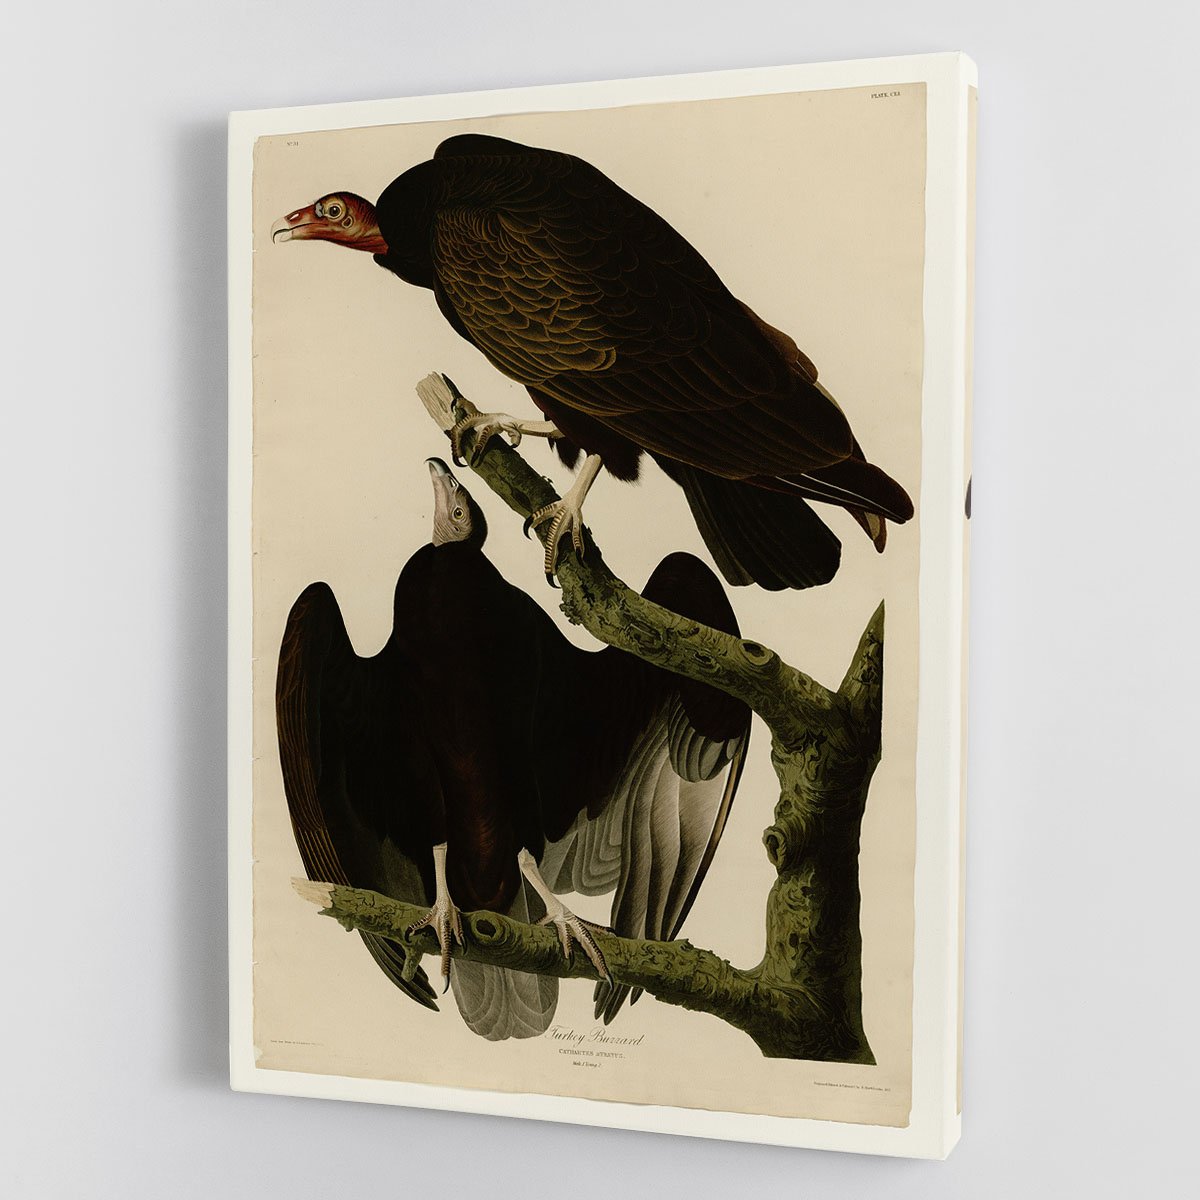 Turkey Buzzard by Audubon Canvas Print or Poster